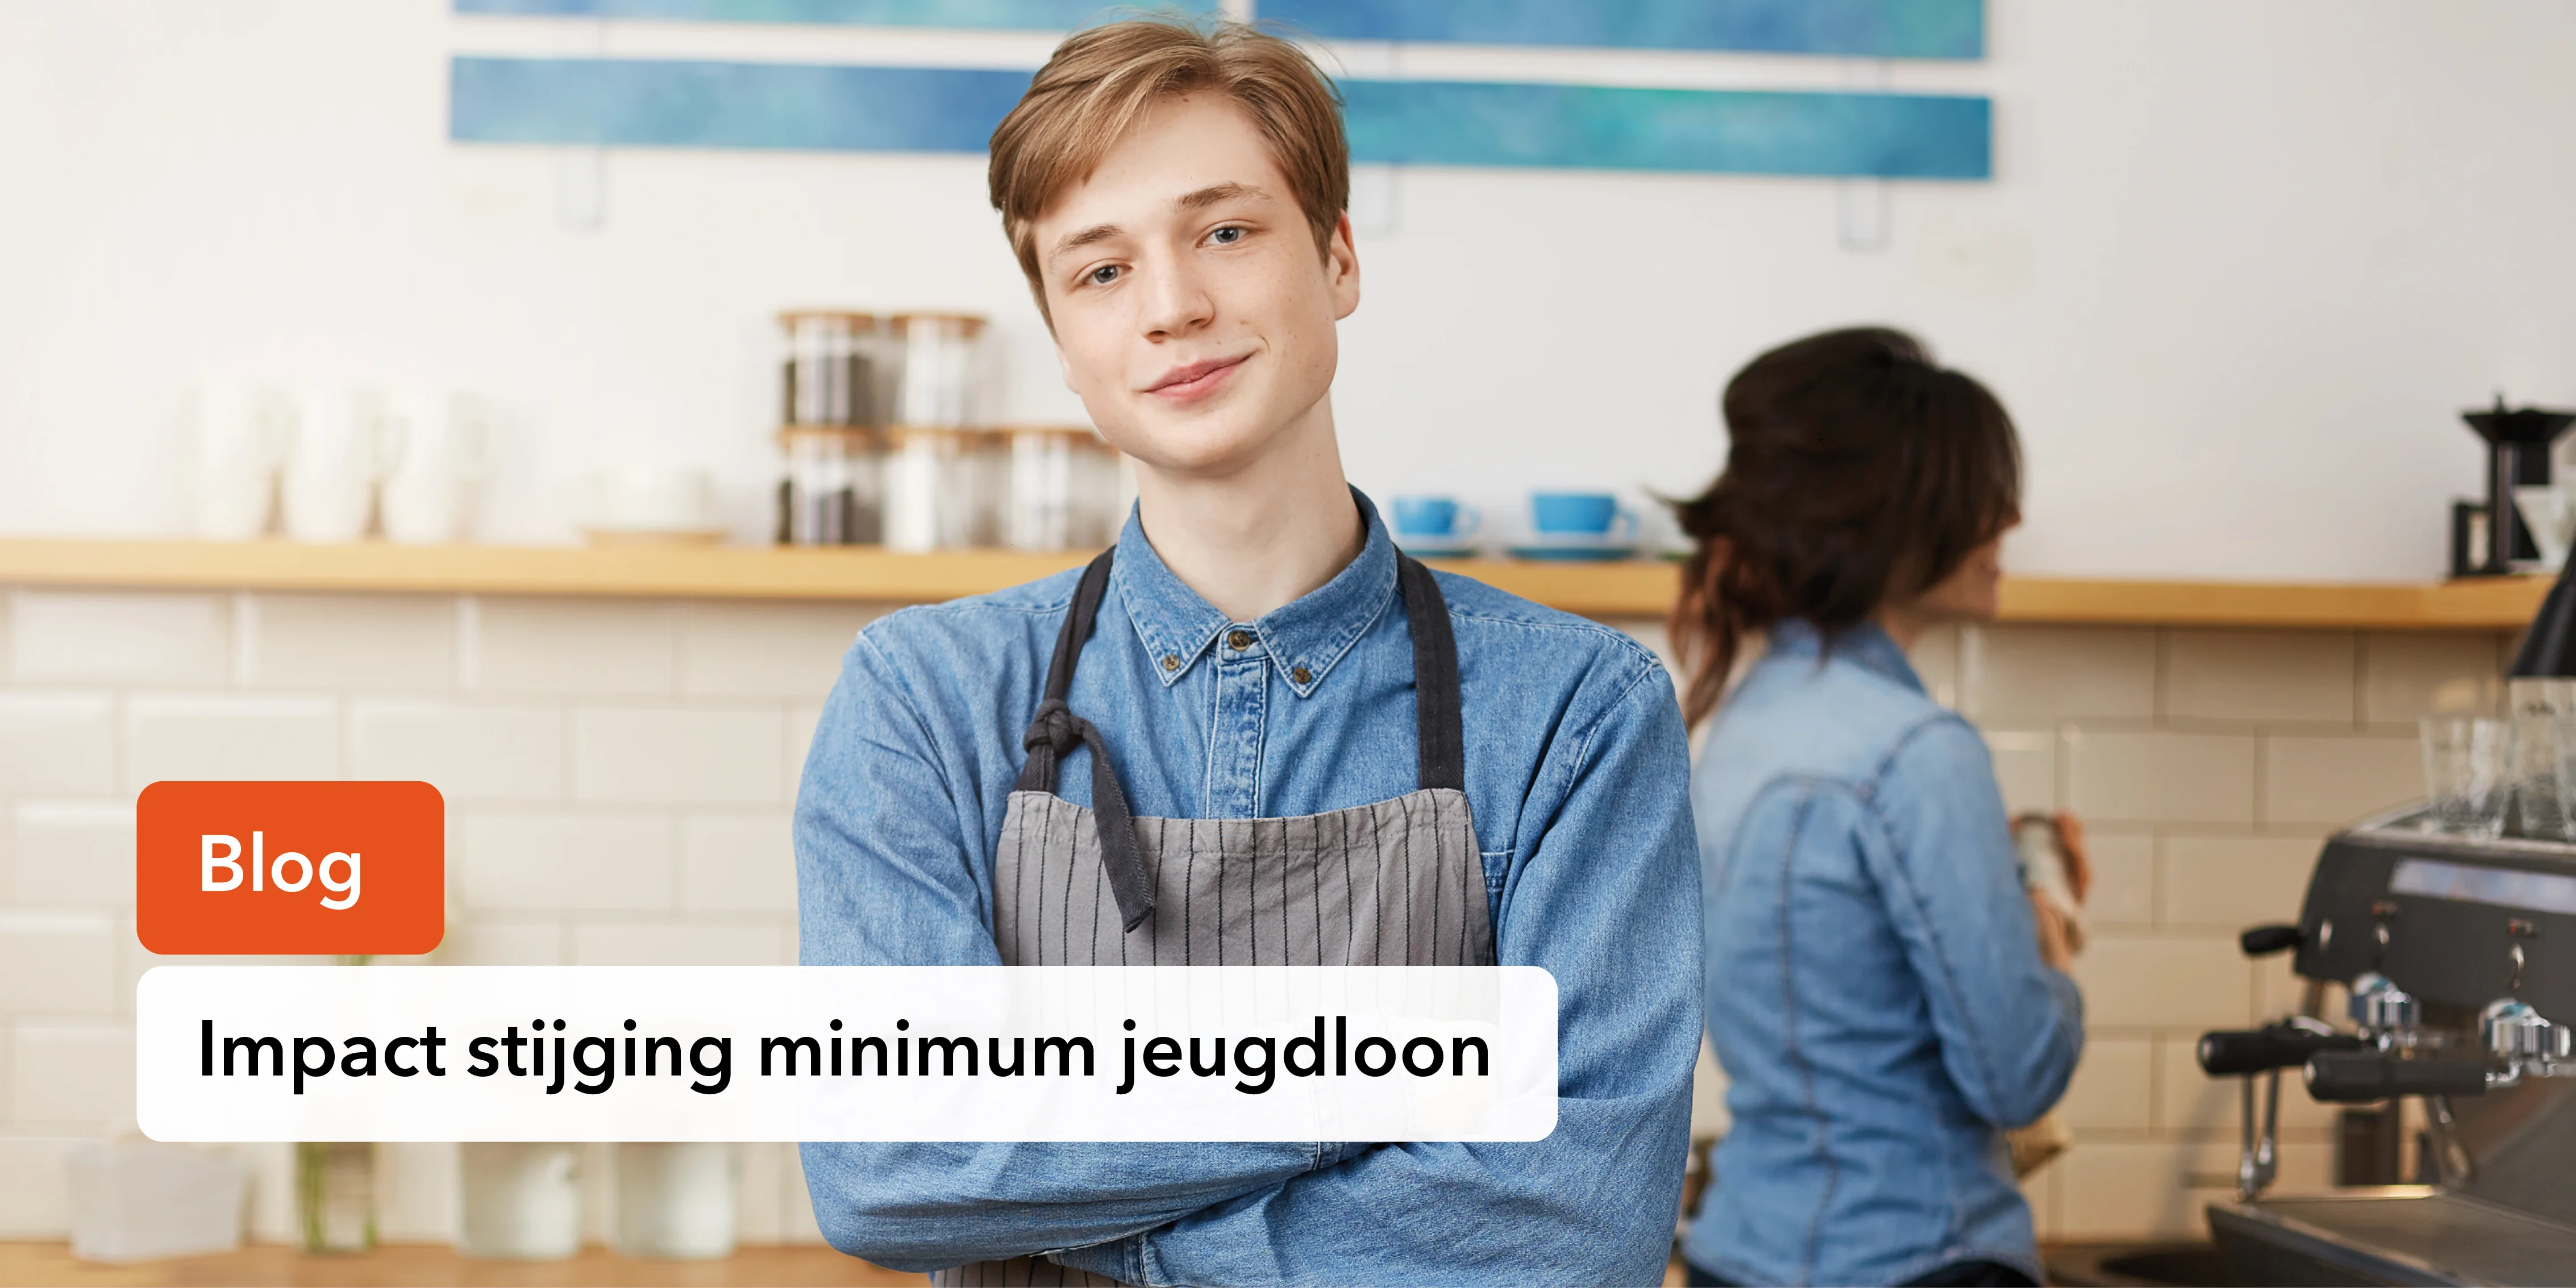 De stijging van het minimum jeugdloon